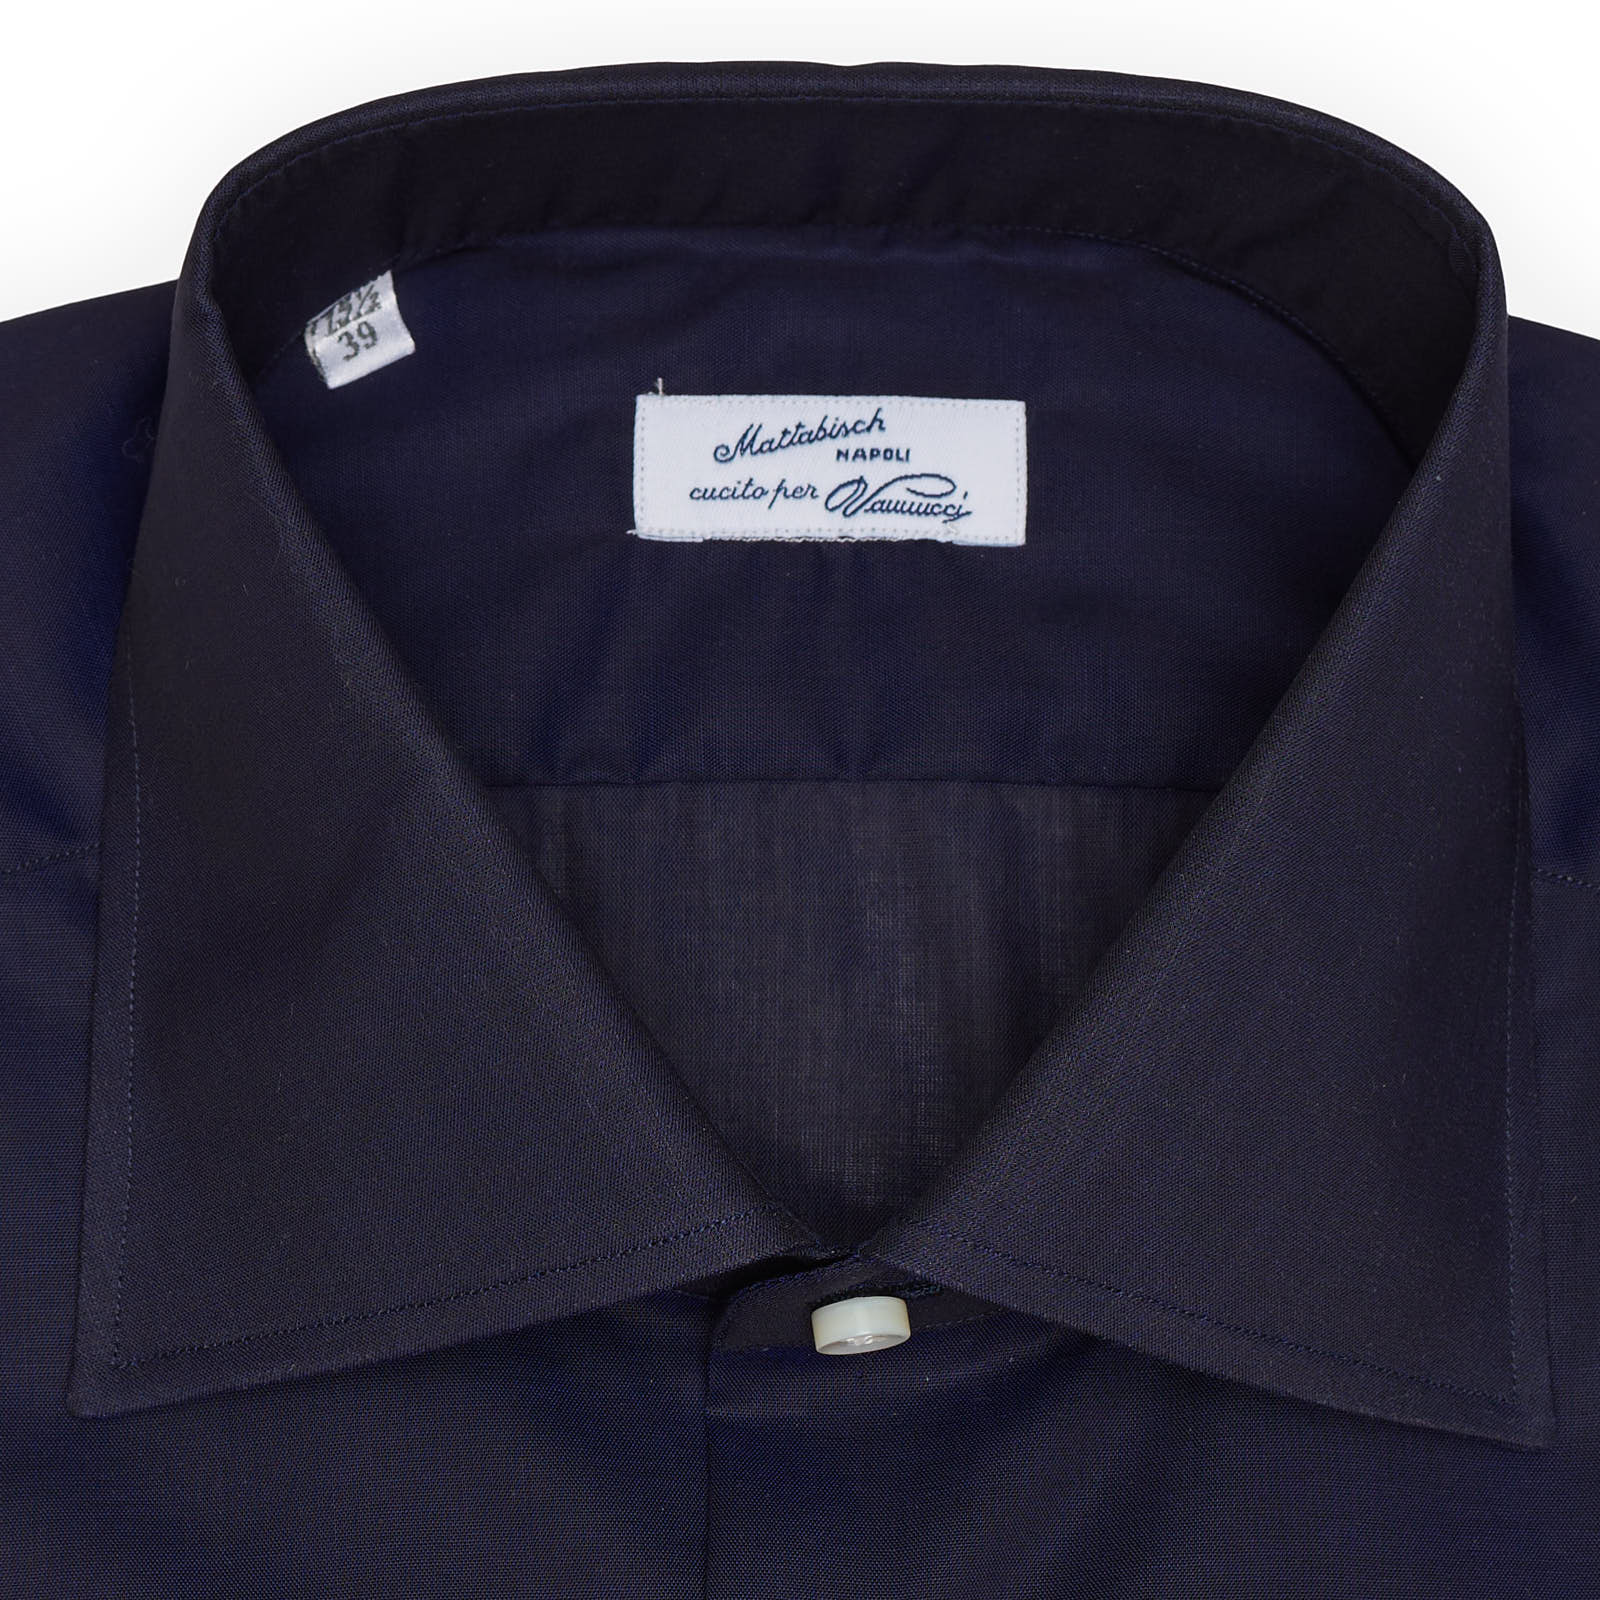 MATTABISCH for VANNUCCI Blue Cotton Dress Shirt EU 39 NEW US 15.5